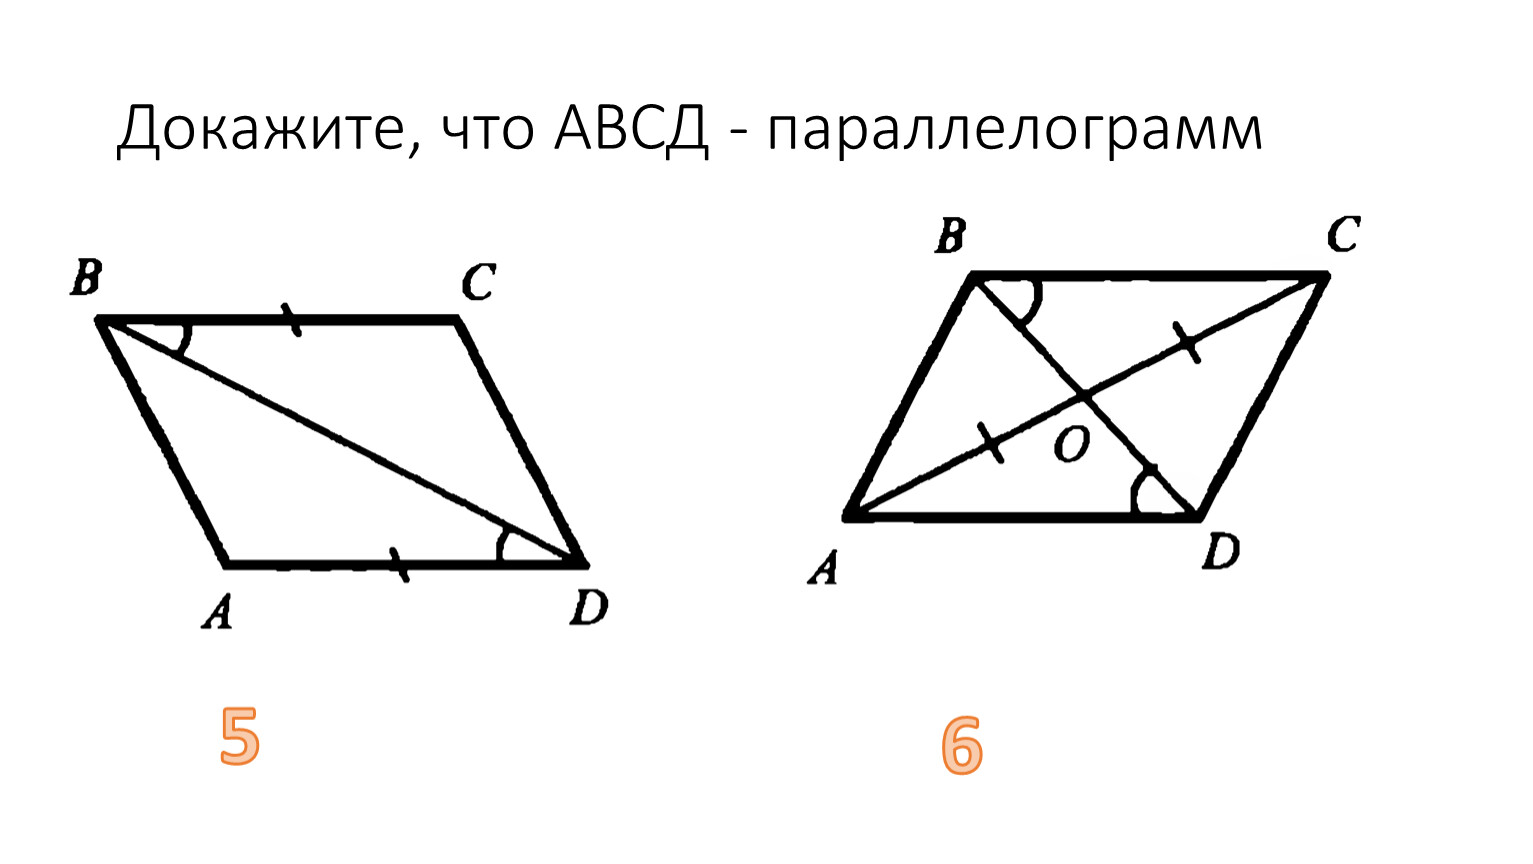 На рисунках изображены треугольники четырехугольники. Равенство углов в четырехугольнике. Параллелограмм АВСД. Доказать что АВСД параллелограмм. Признаки параллелограмма доказательство.